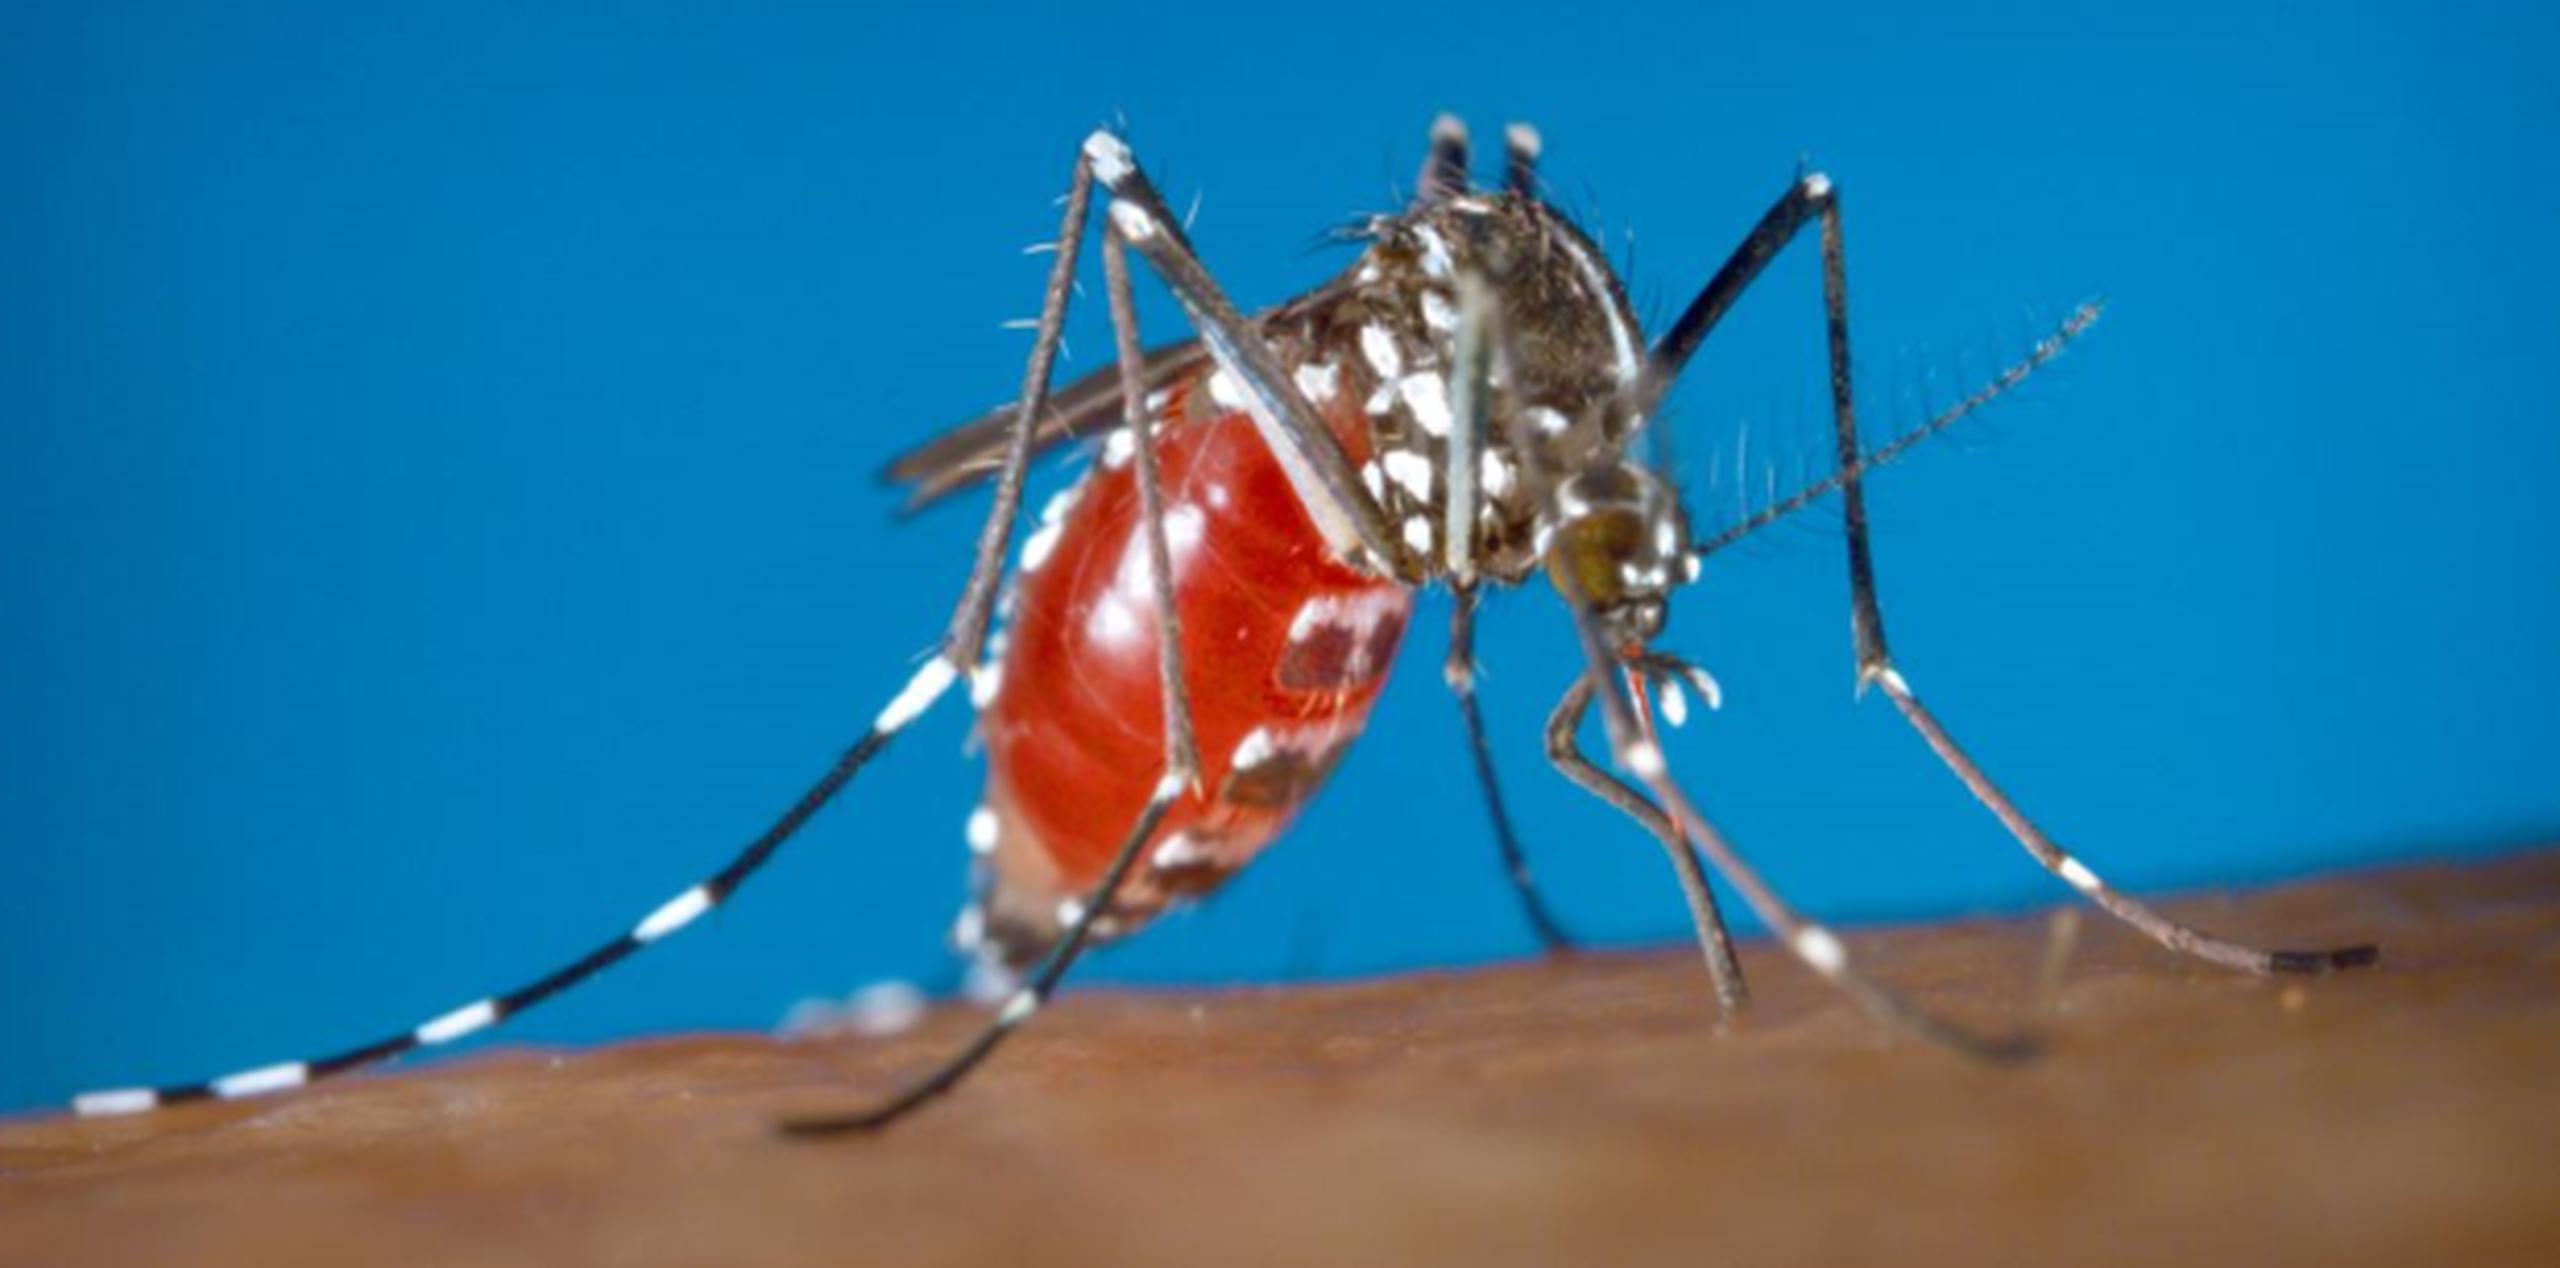 La infección por el virus del Zika tiene por causa la picadura de mosquitos infectados del género Aedes, y suele generar fiebre leve, sarpullidos, conjuntivitis y dolores musculares. (AP)